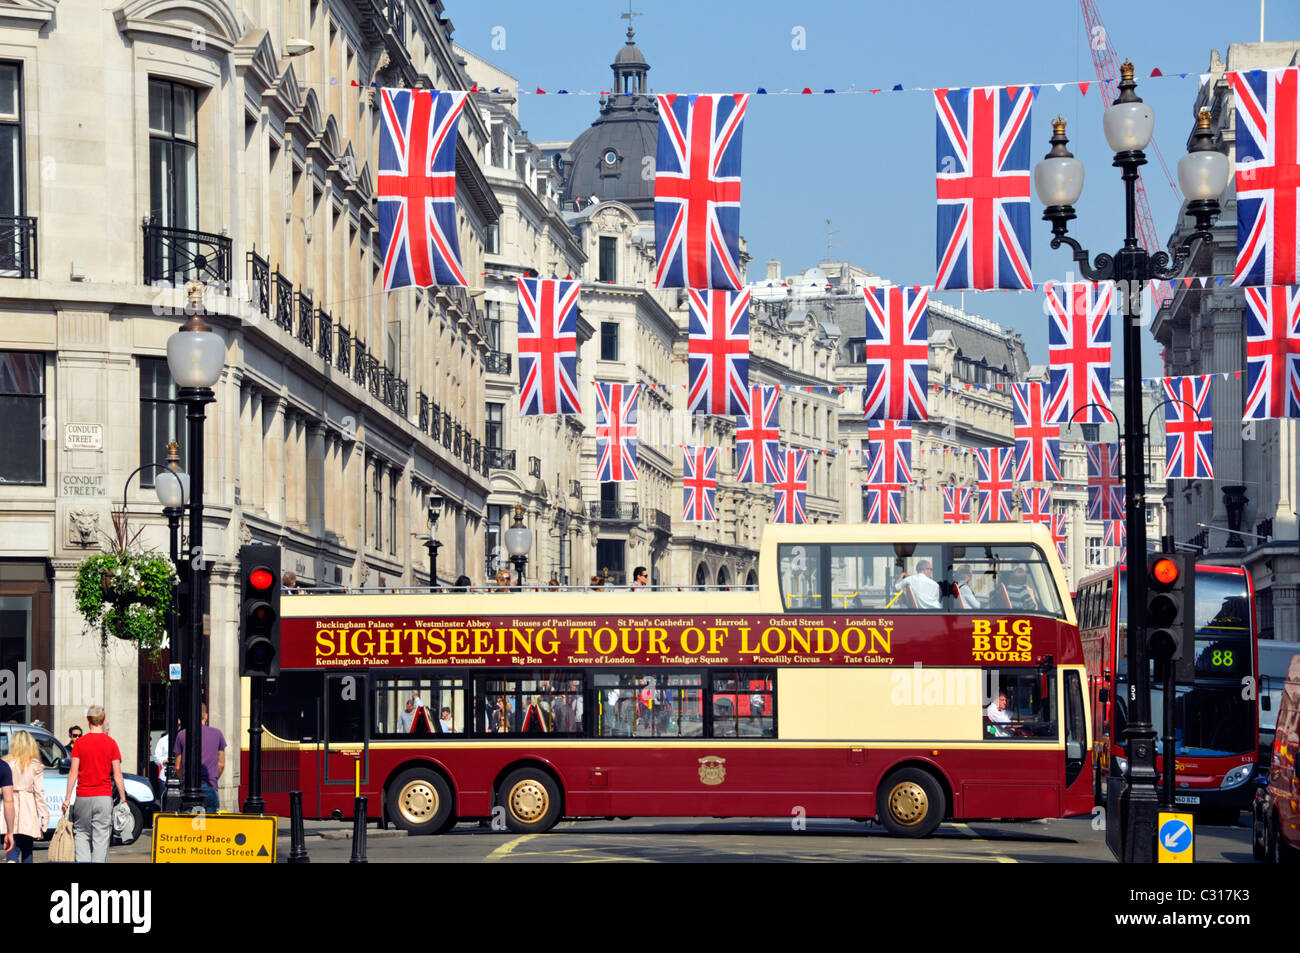 Flaggen mit Sightseeing-Tour durch London Werbung auf der Seite Offener Doppeldecker-Großbus, der zur Regent Street wird Unter Union Jack Flagge veraunting UK Stockfoto